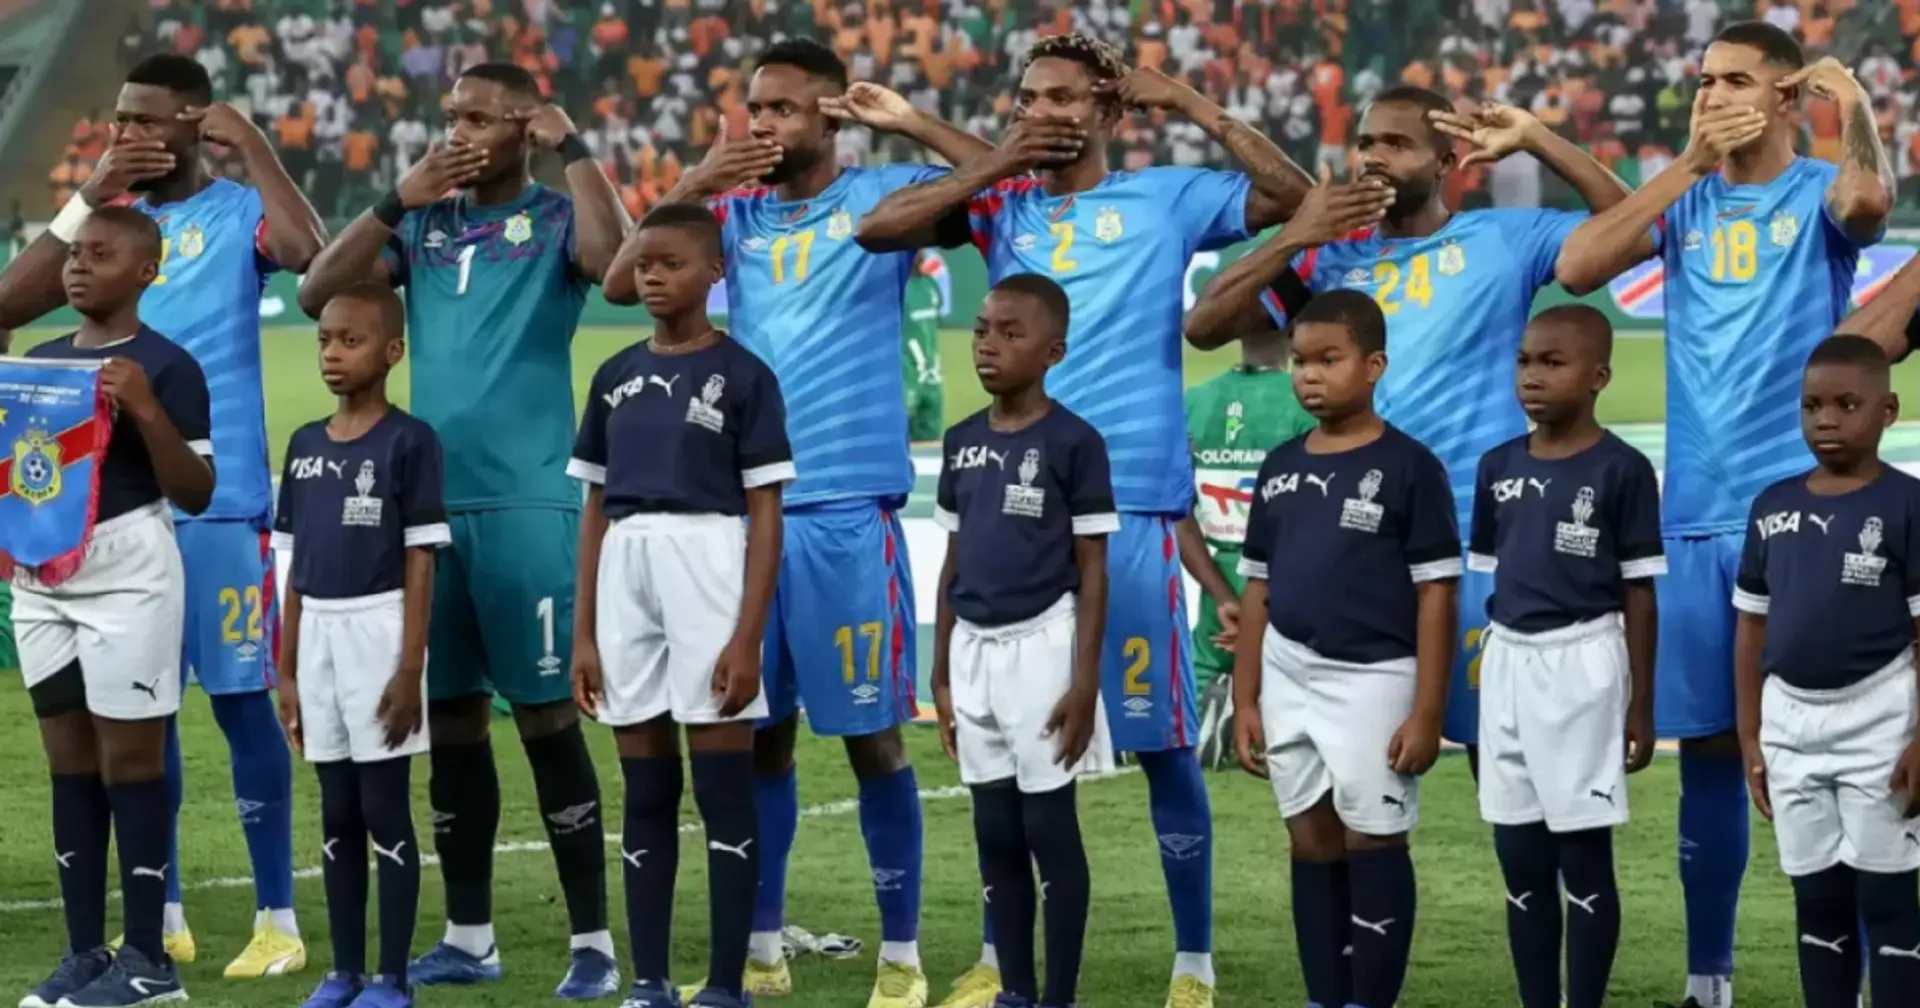 L'équipe de la RD Congo manifeste pour la paix dans son pays pendant l'hymne national